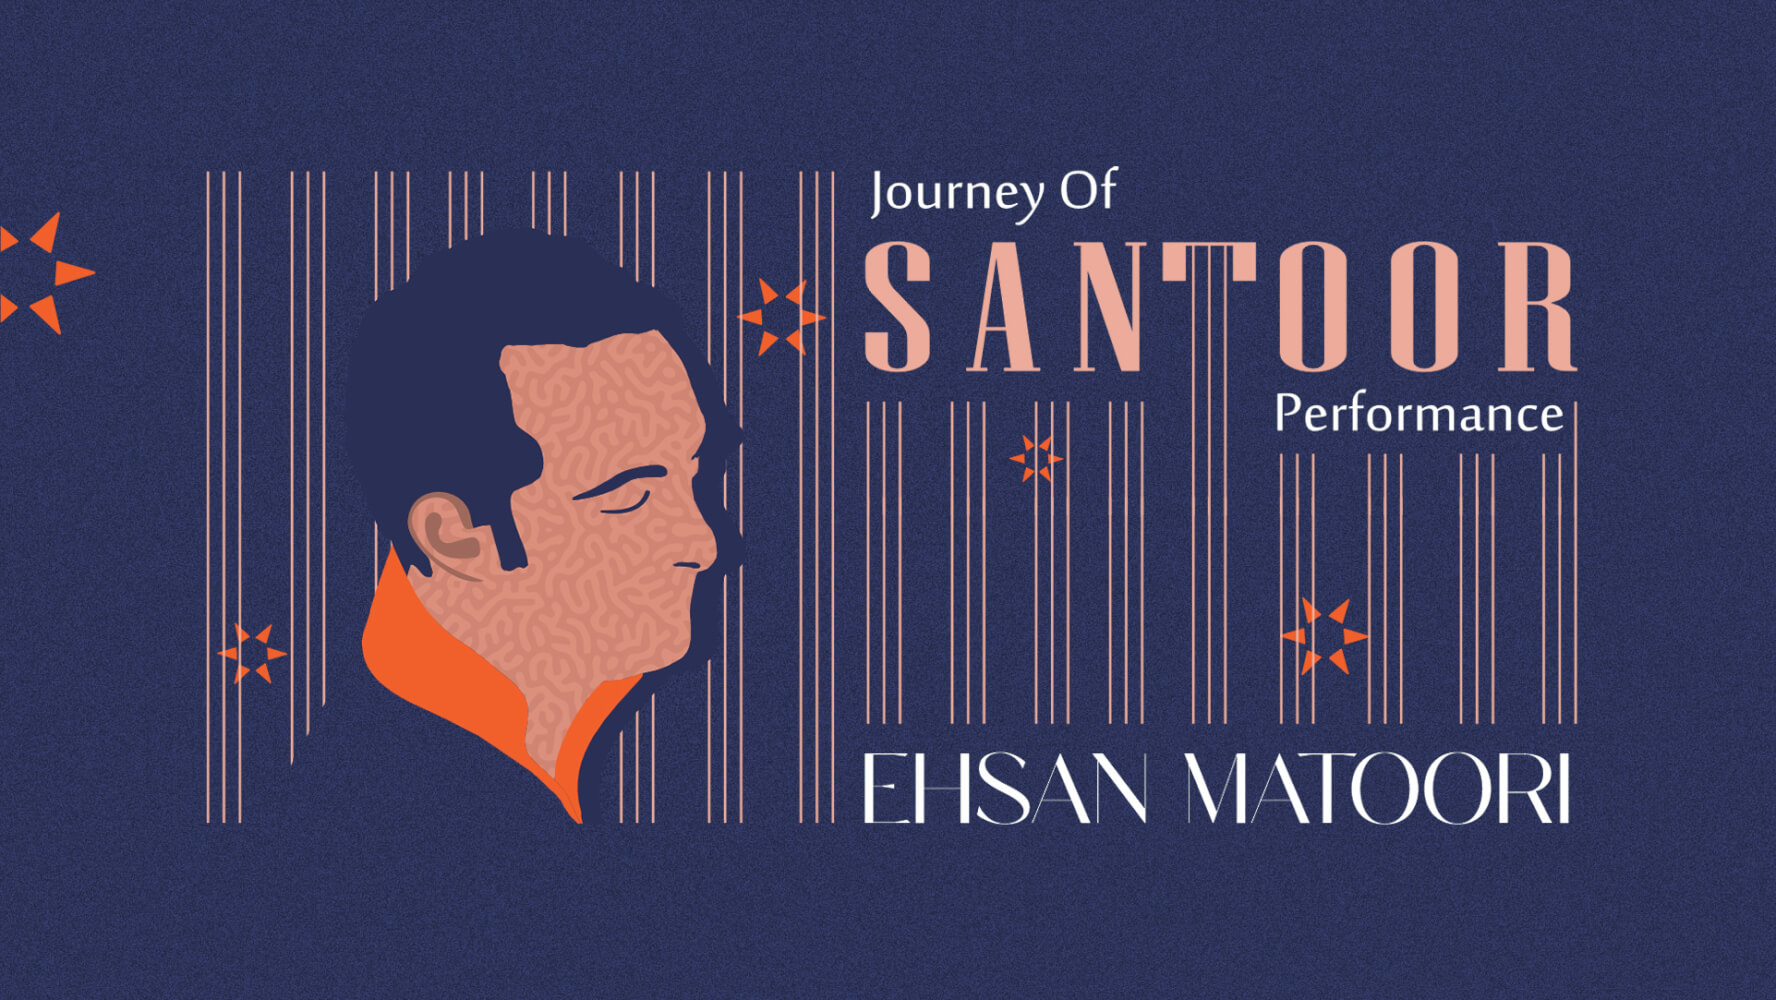 Journey of Santoor